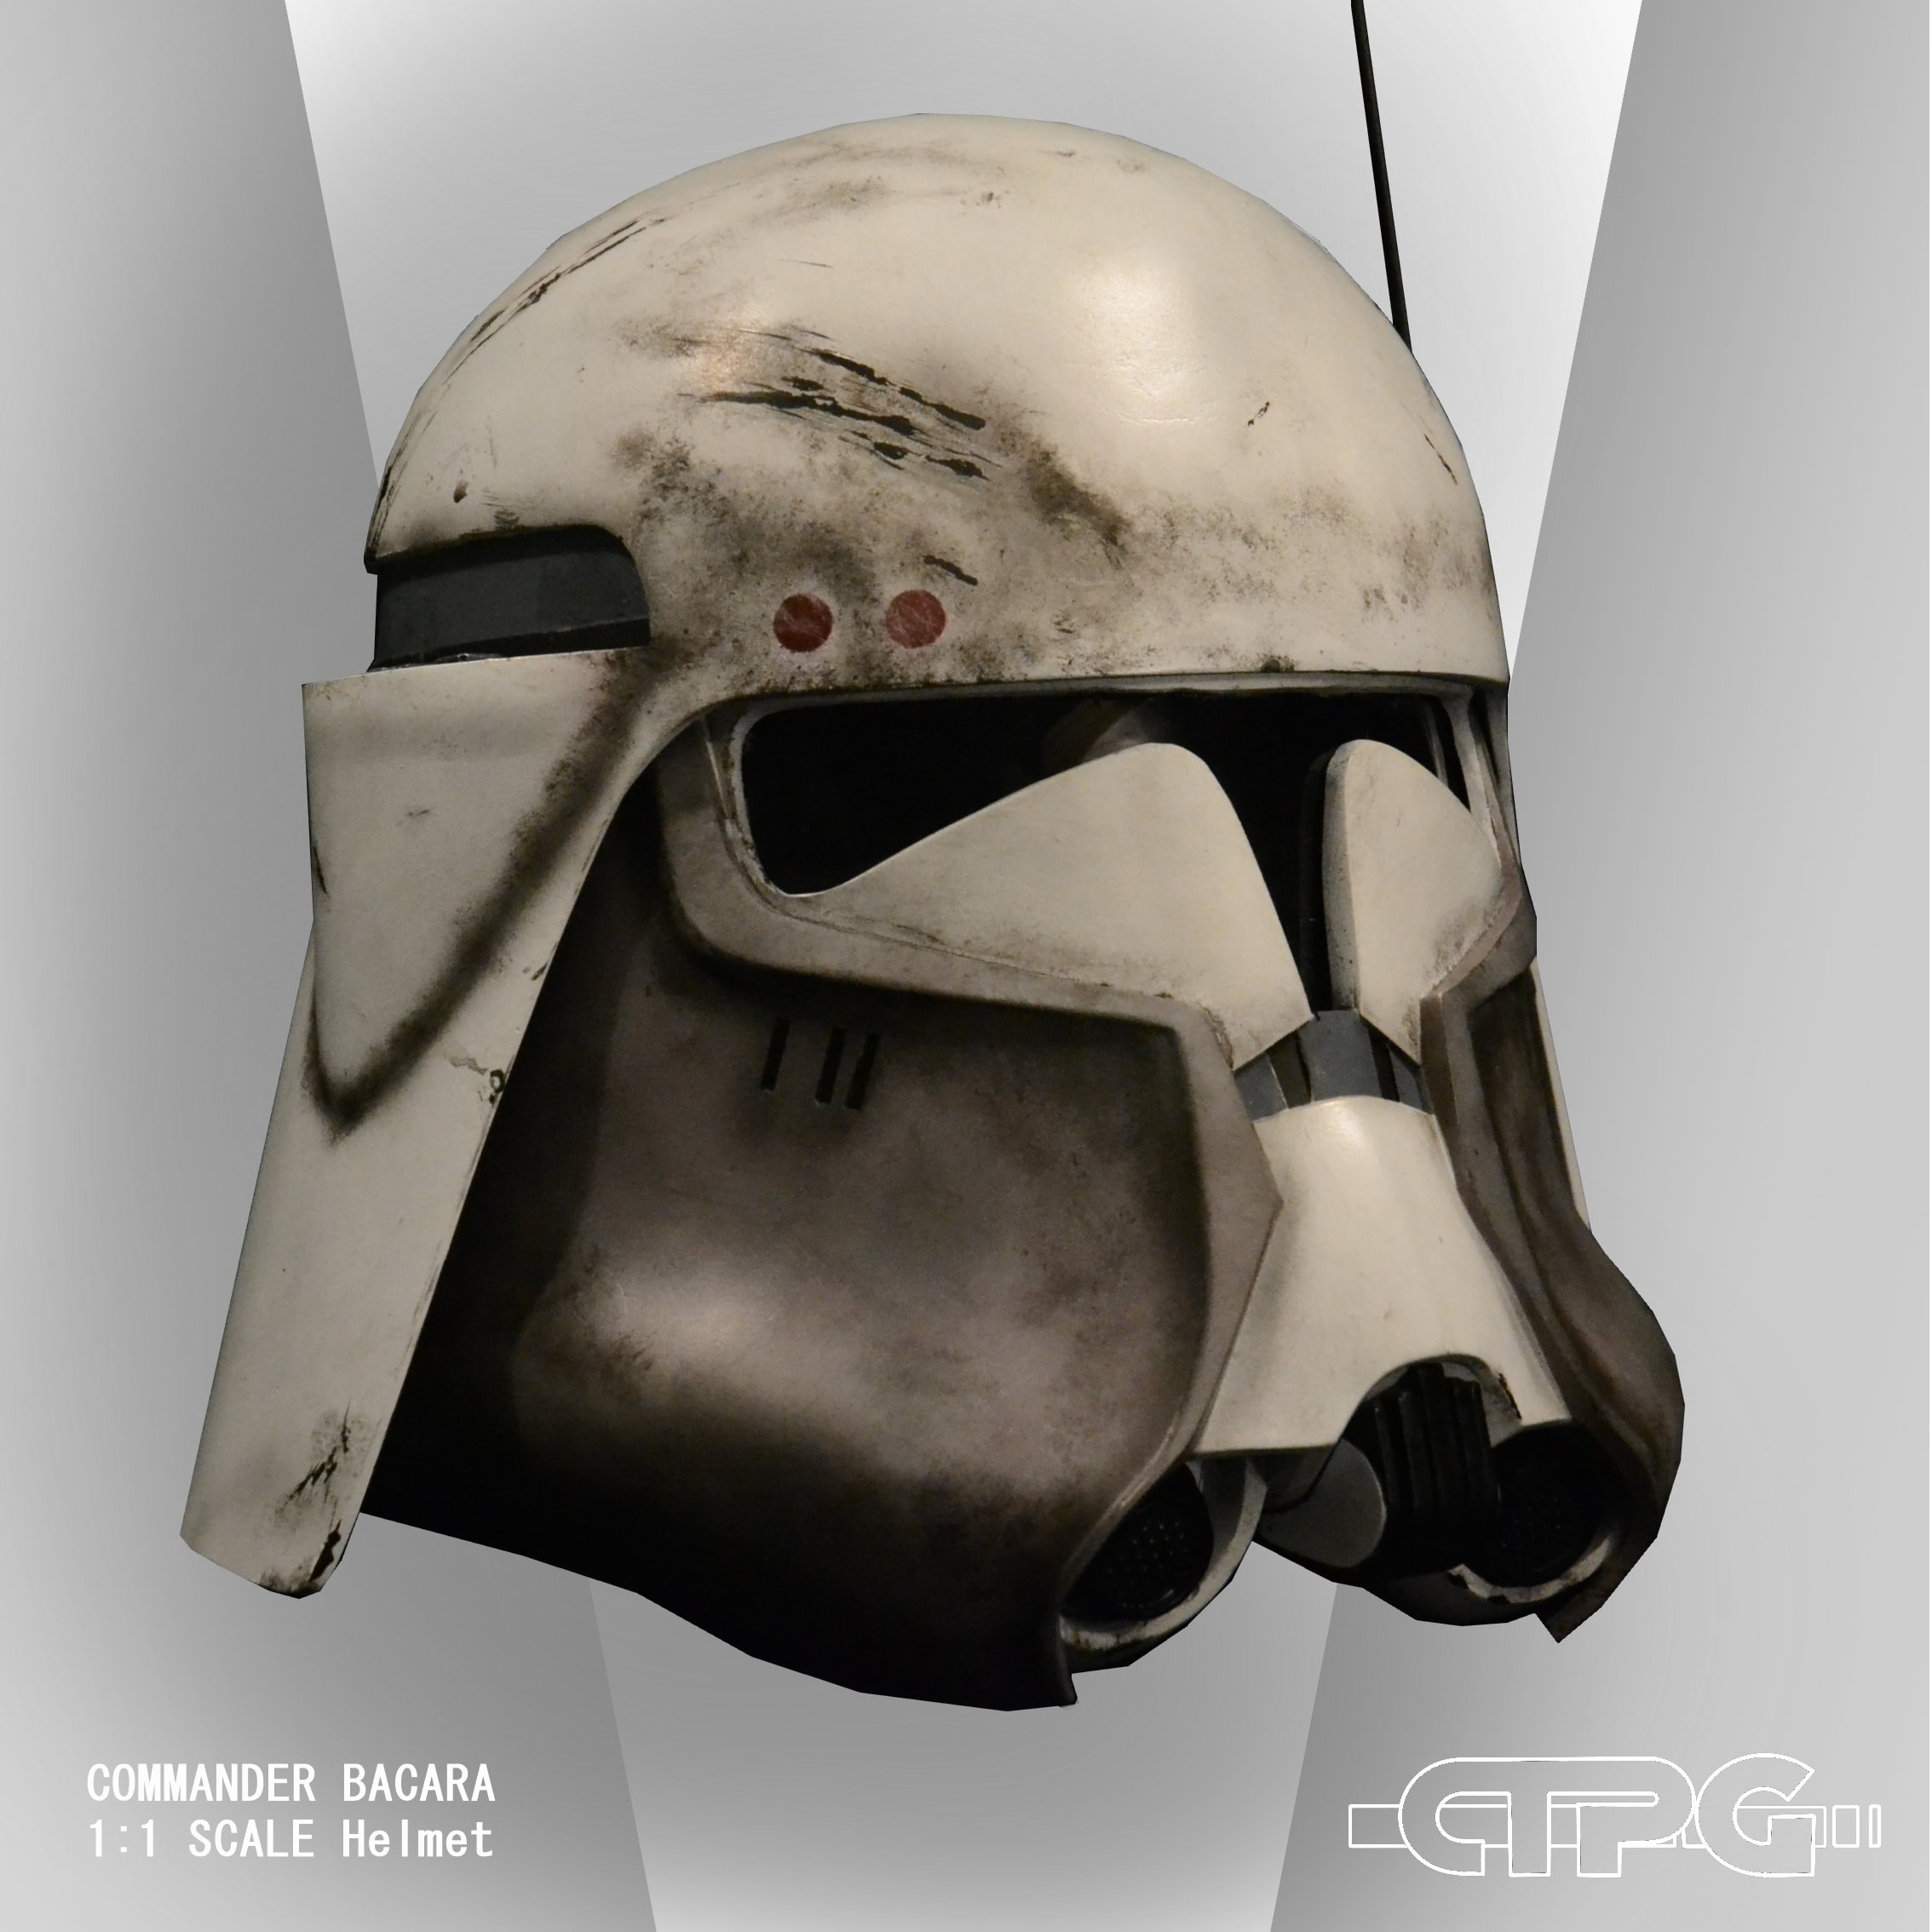 Ciro cada vez clase Star Wars Episodio 3 Clon Commander Bacara Resin Helmet Kit - Etsy España